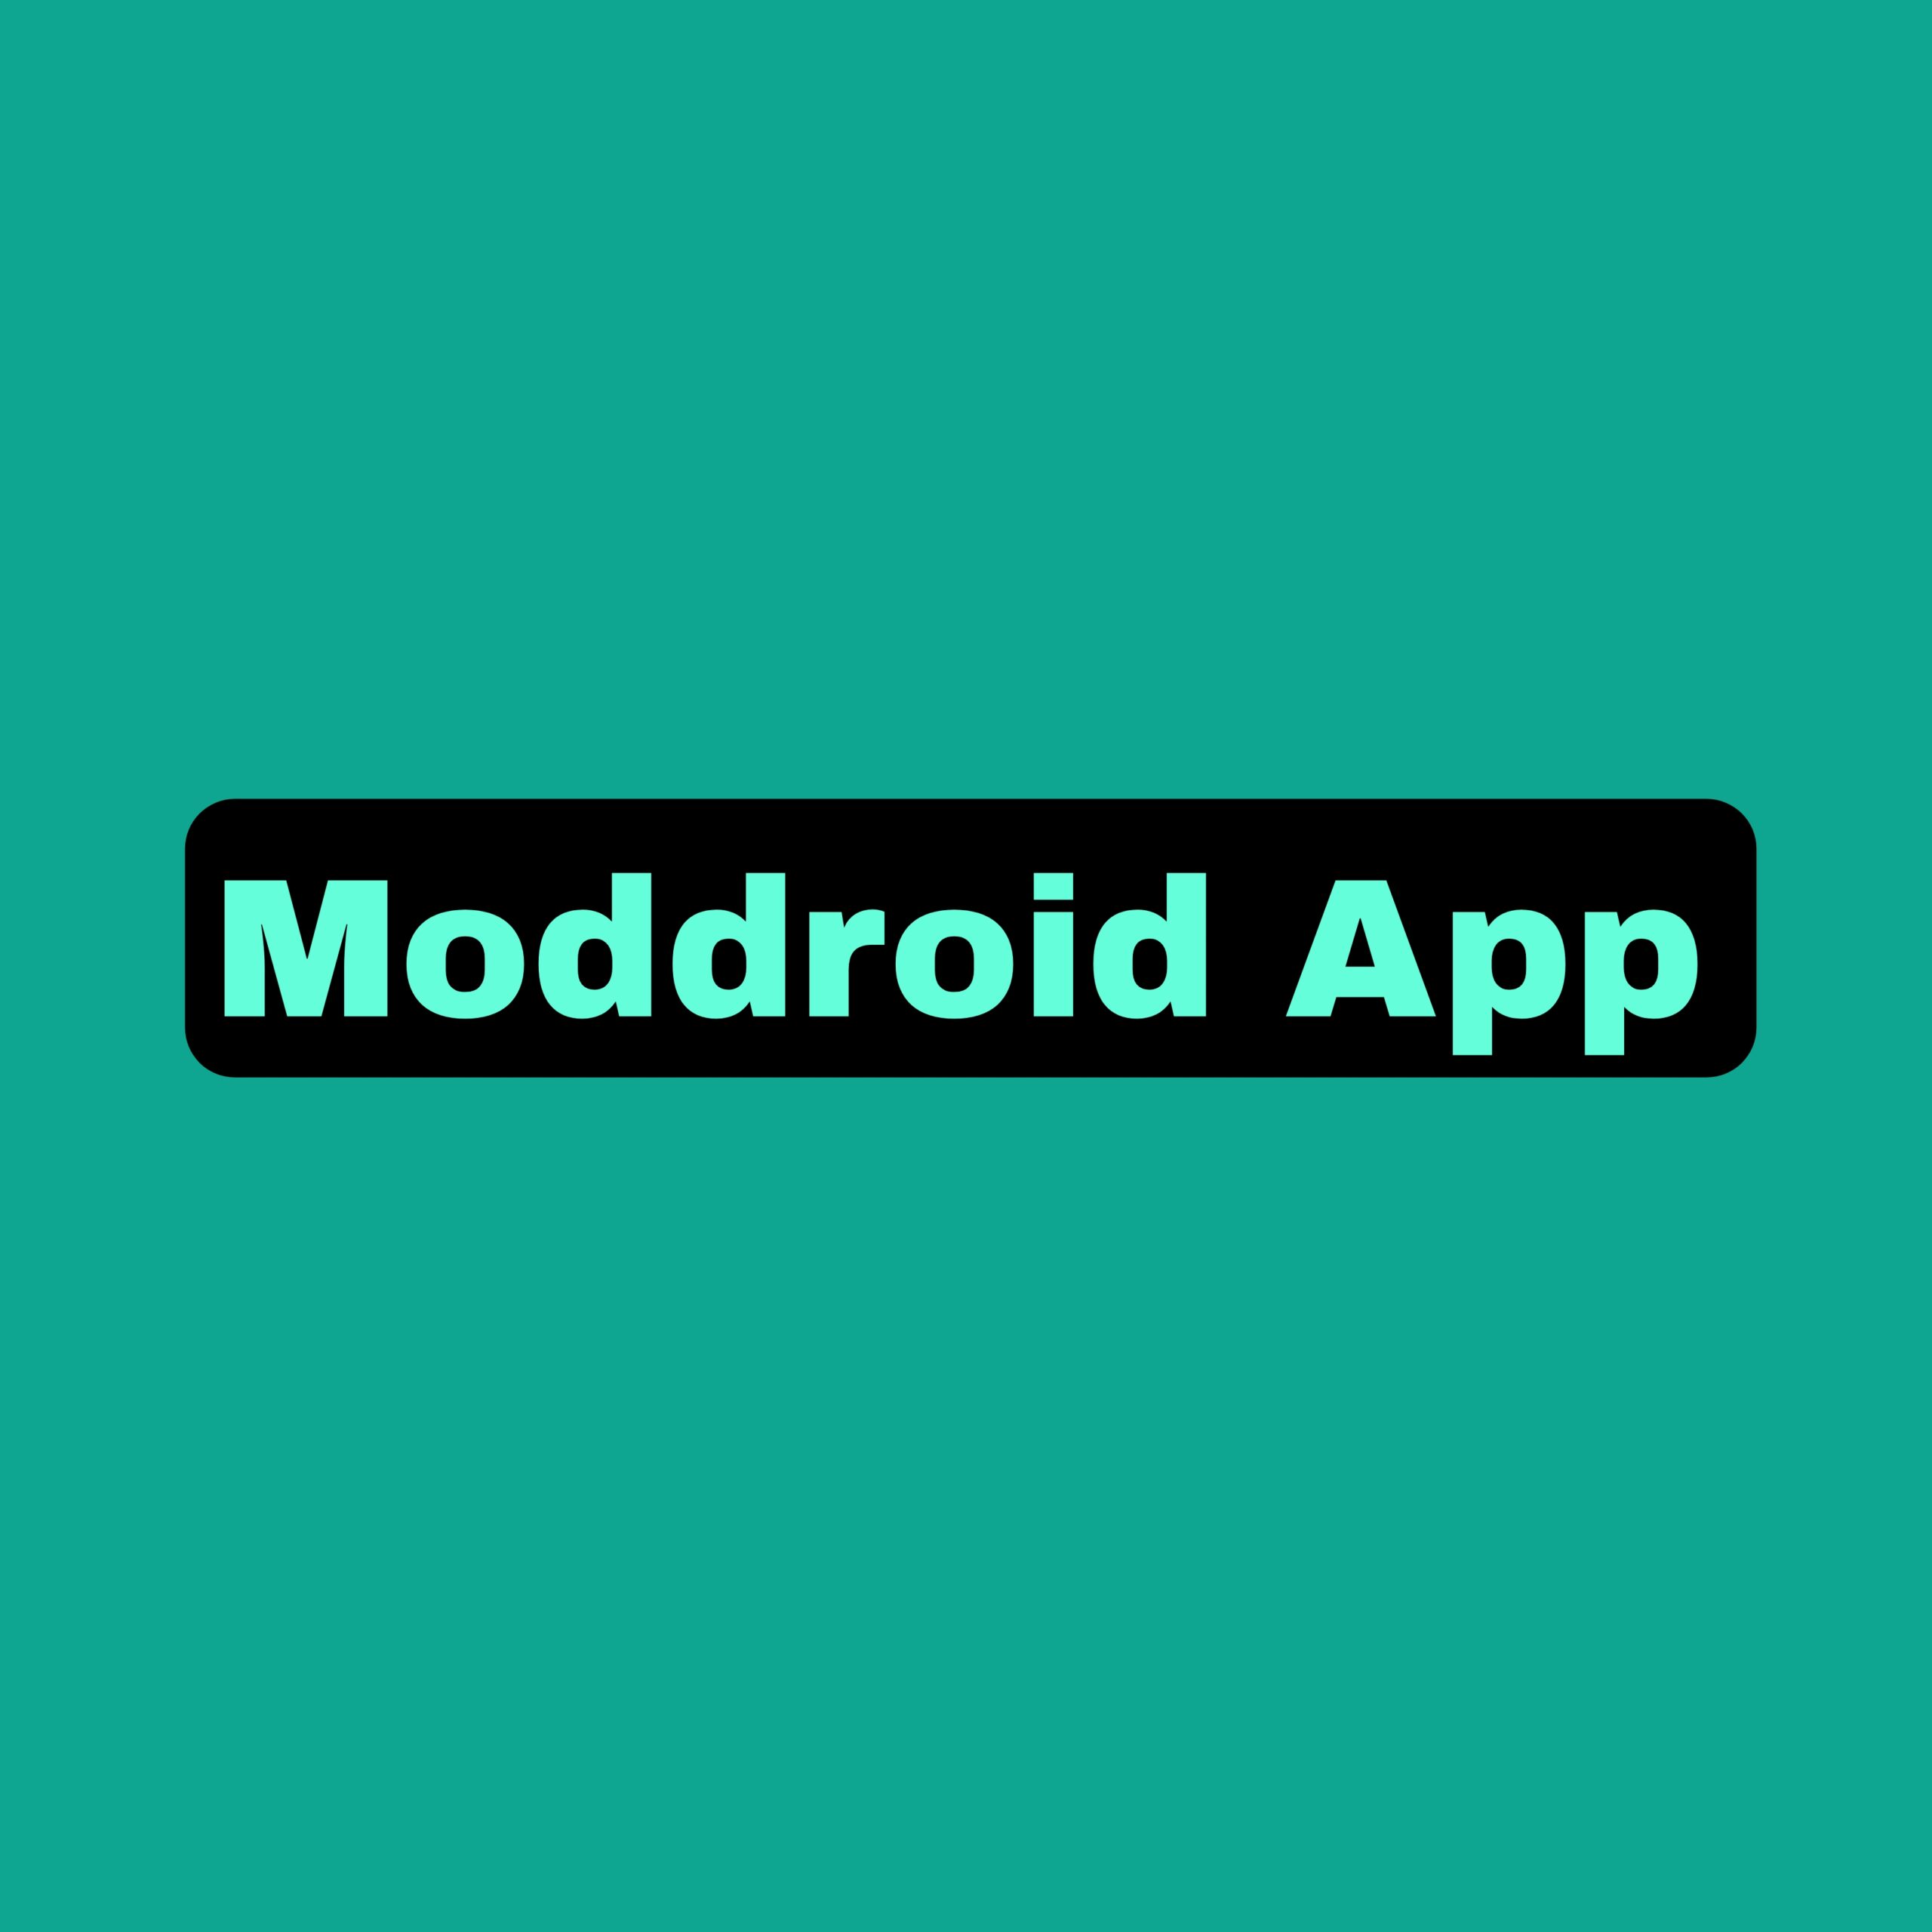 Moddroid Mod Apk v3.2.28 Download (Latest Version)